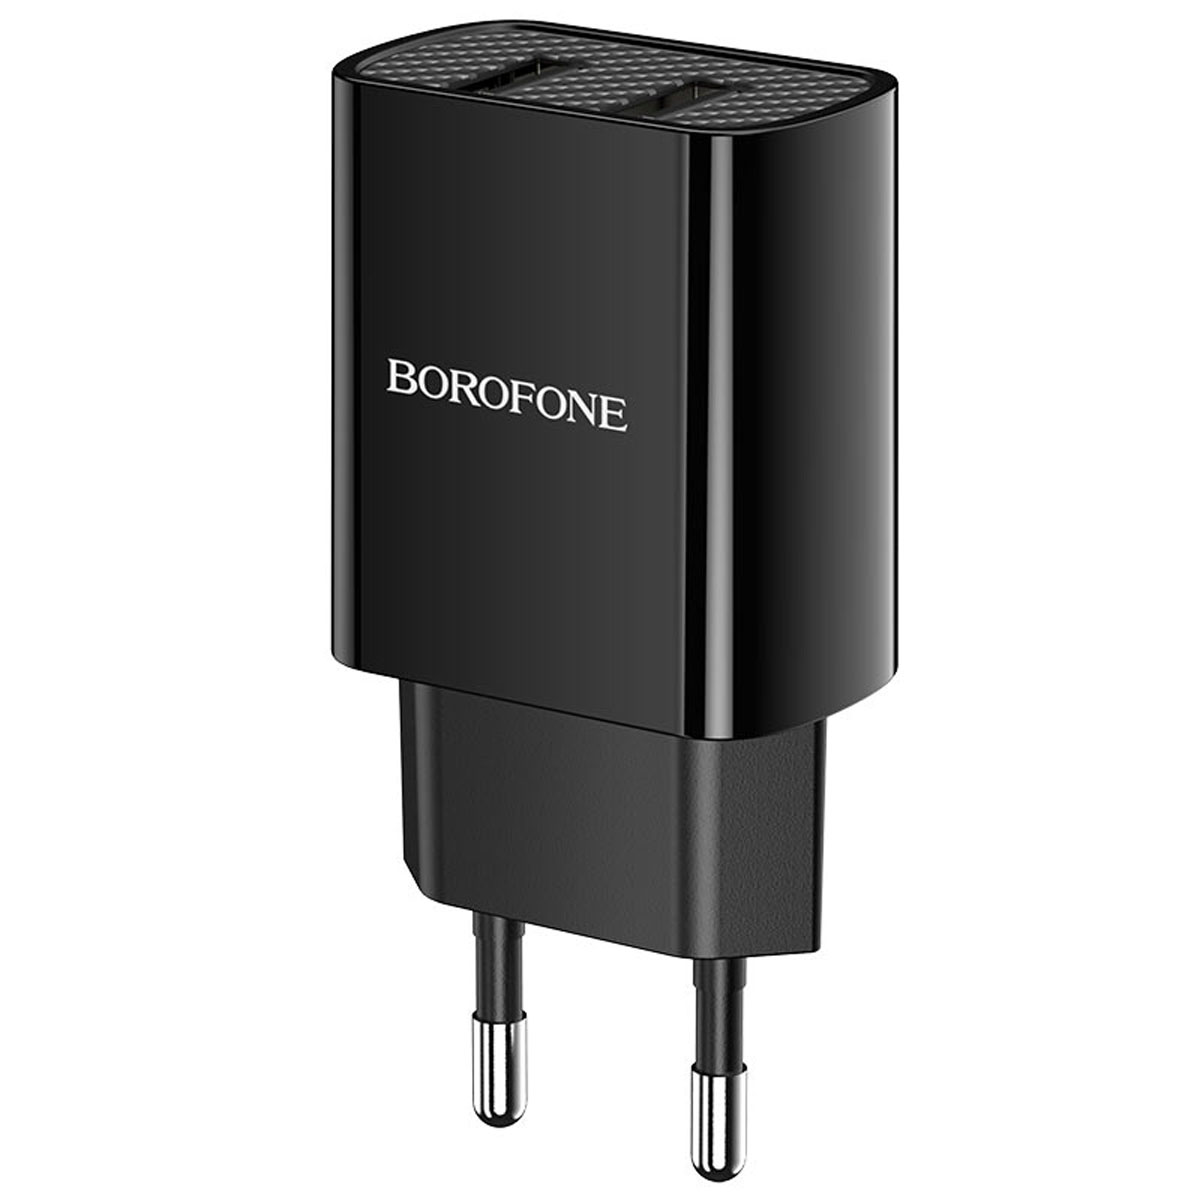 СЗУ (Сетевое зарядное устройство) BOROFONE BA53A Powerway, 2.1A, 2 USB, цвет черный